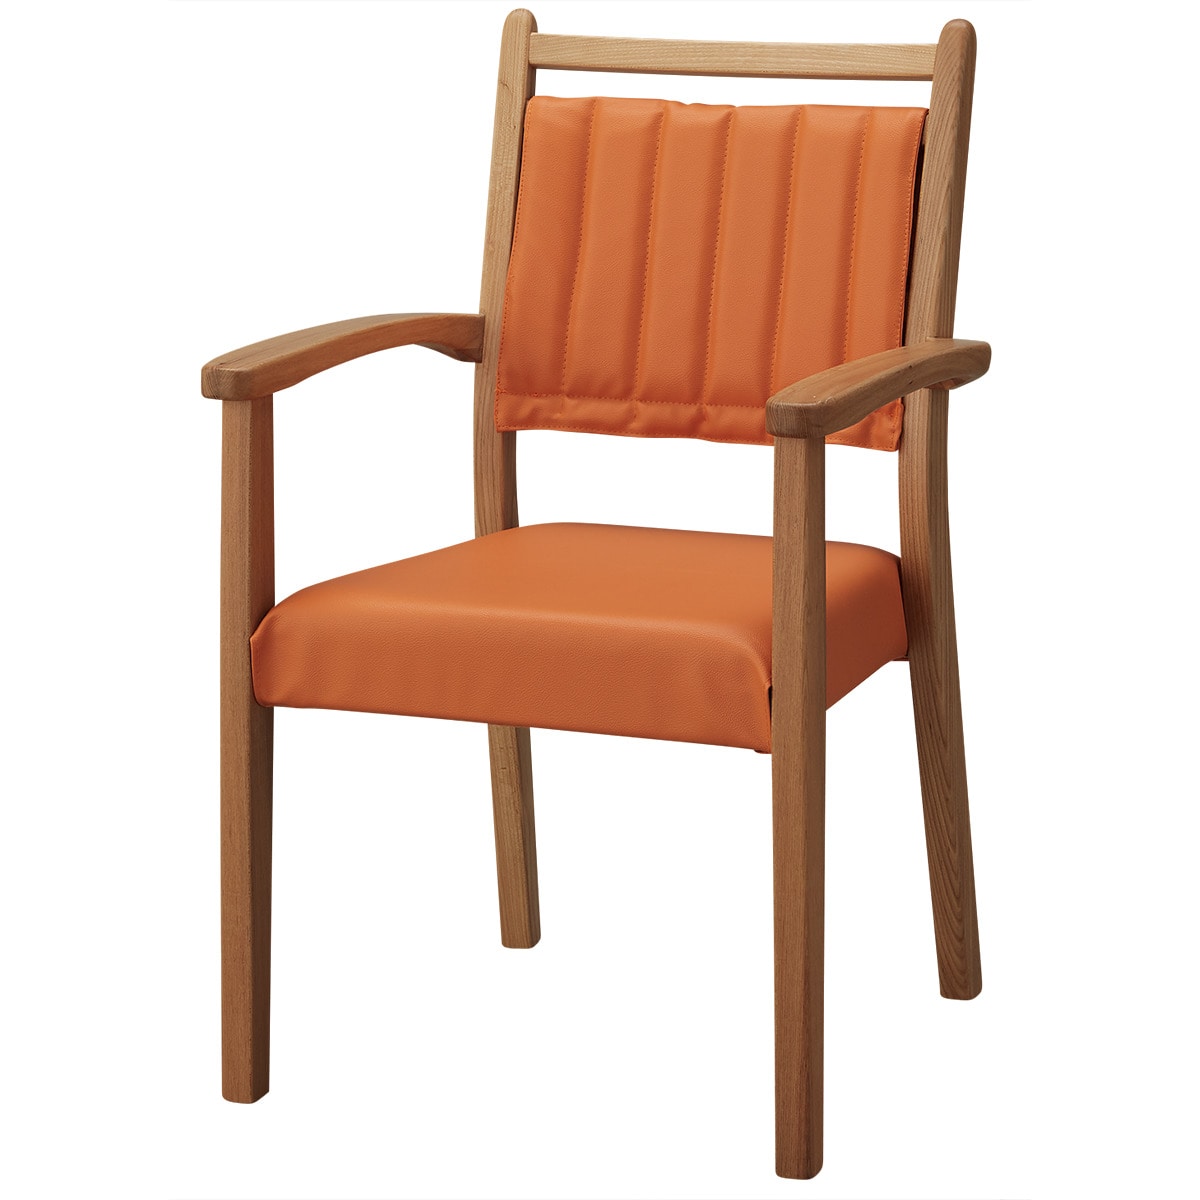 ニトリの[幅56cm] 木製チェア(YF-11 LBR/OR 肘付き)   【1年保証】(チェア・椅子)